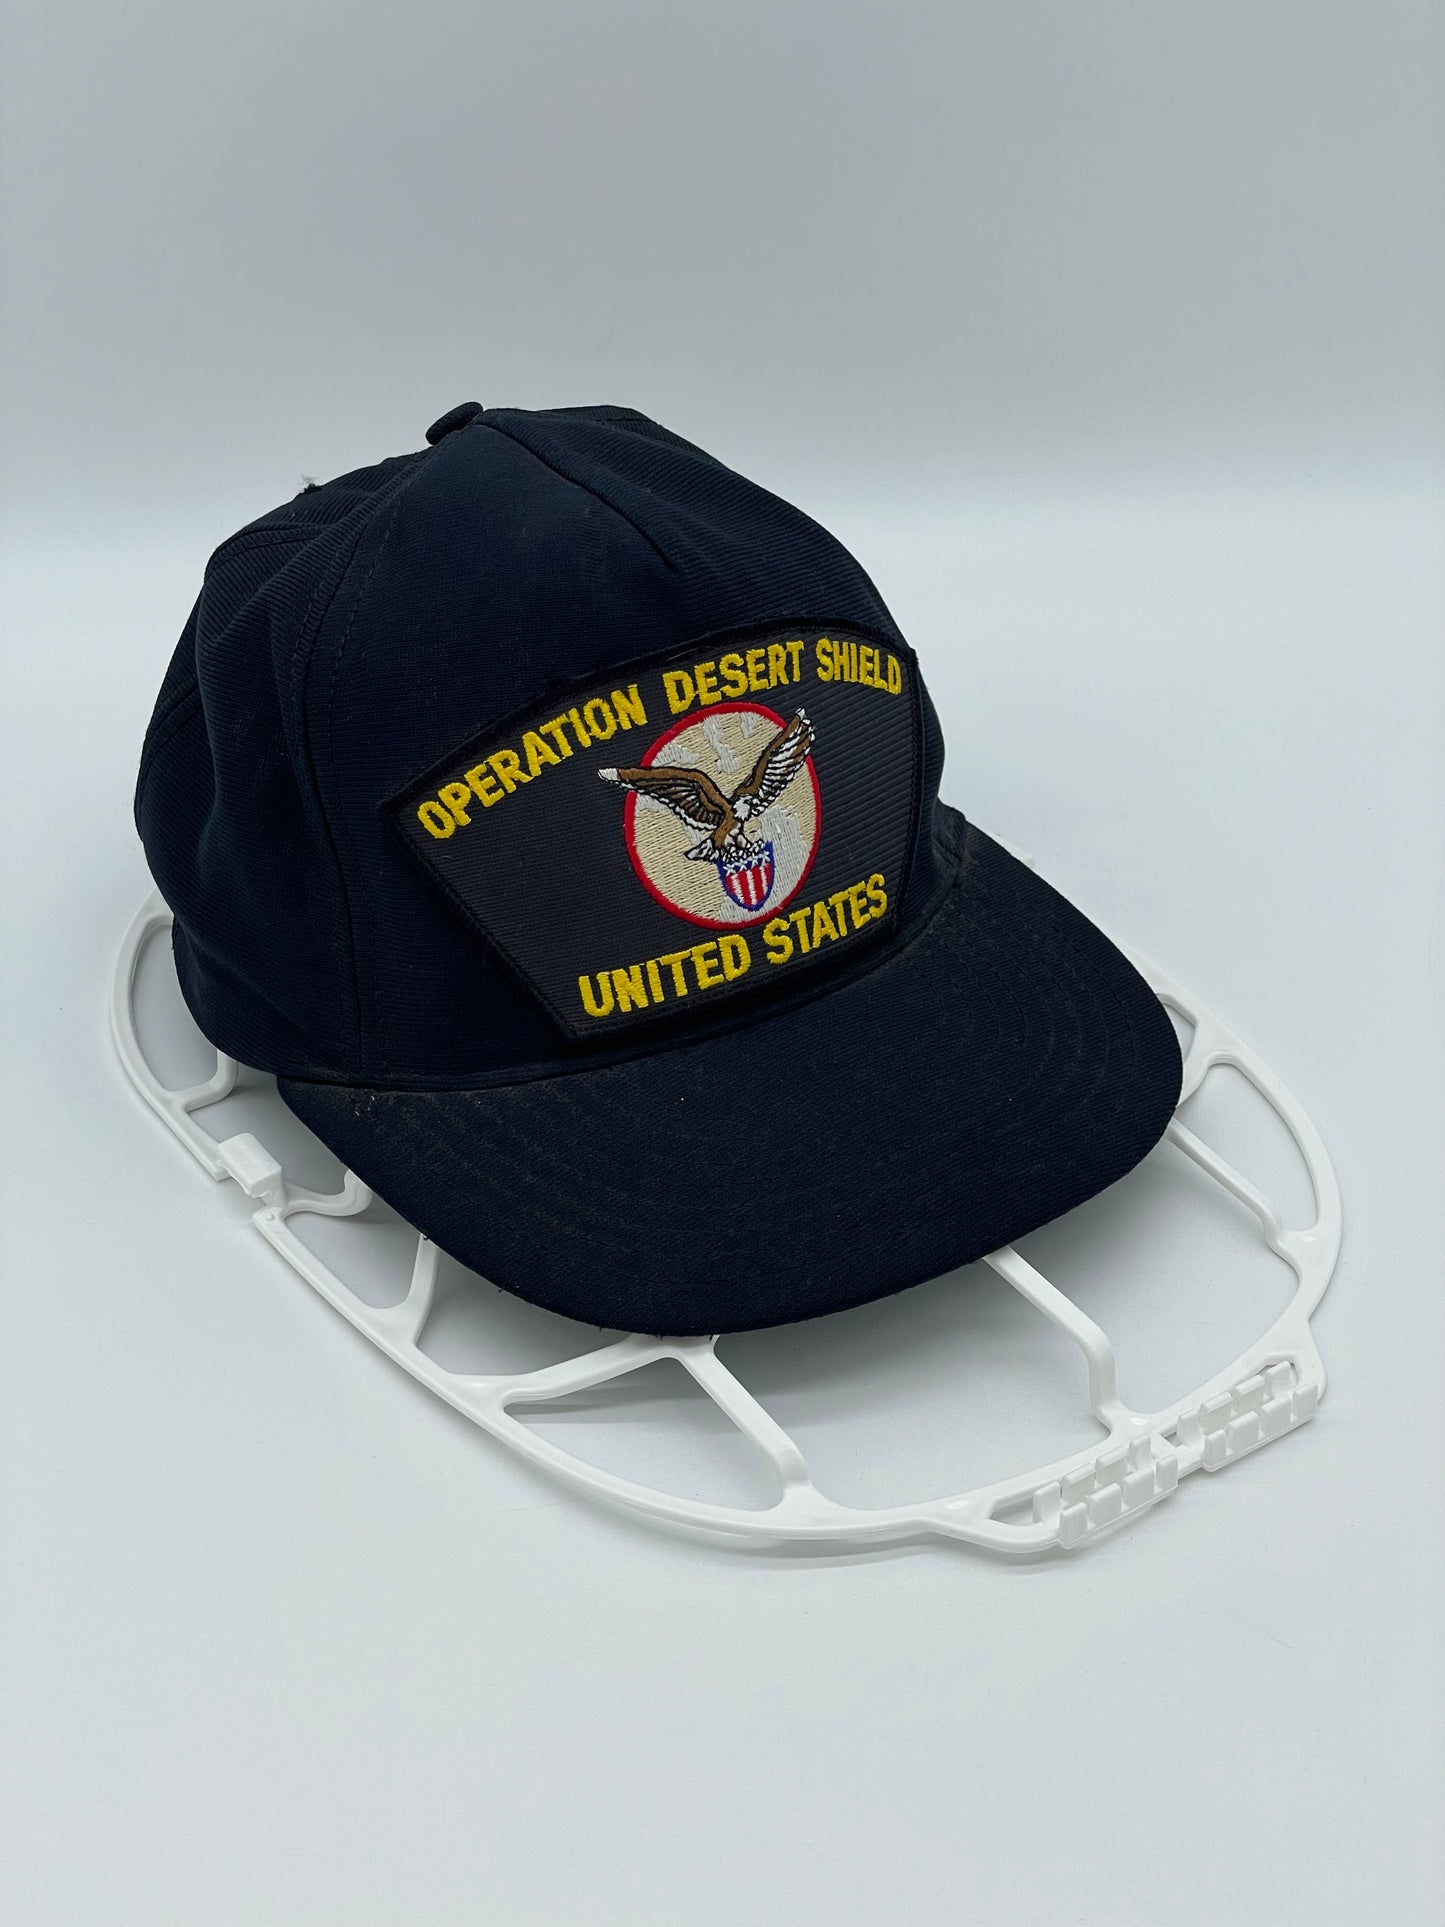 Eagle Crest, hergestellt in den USA